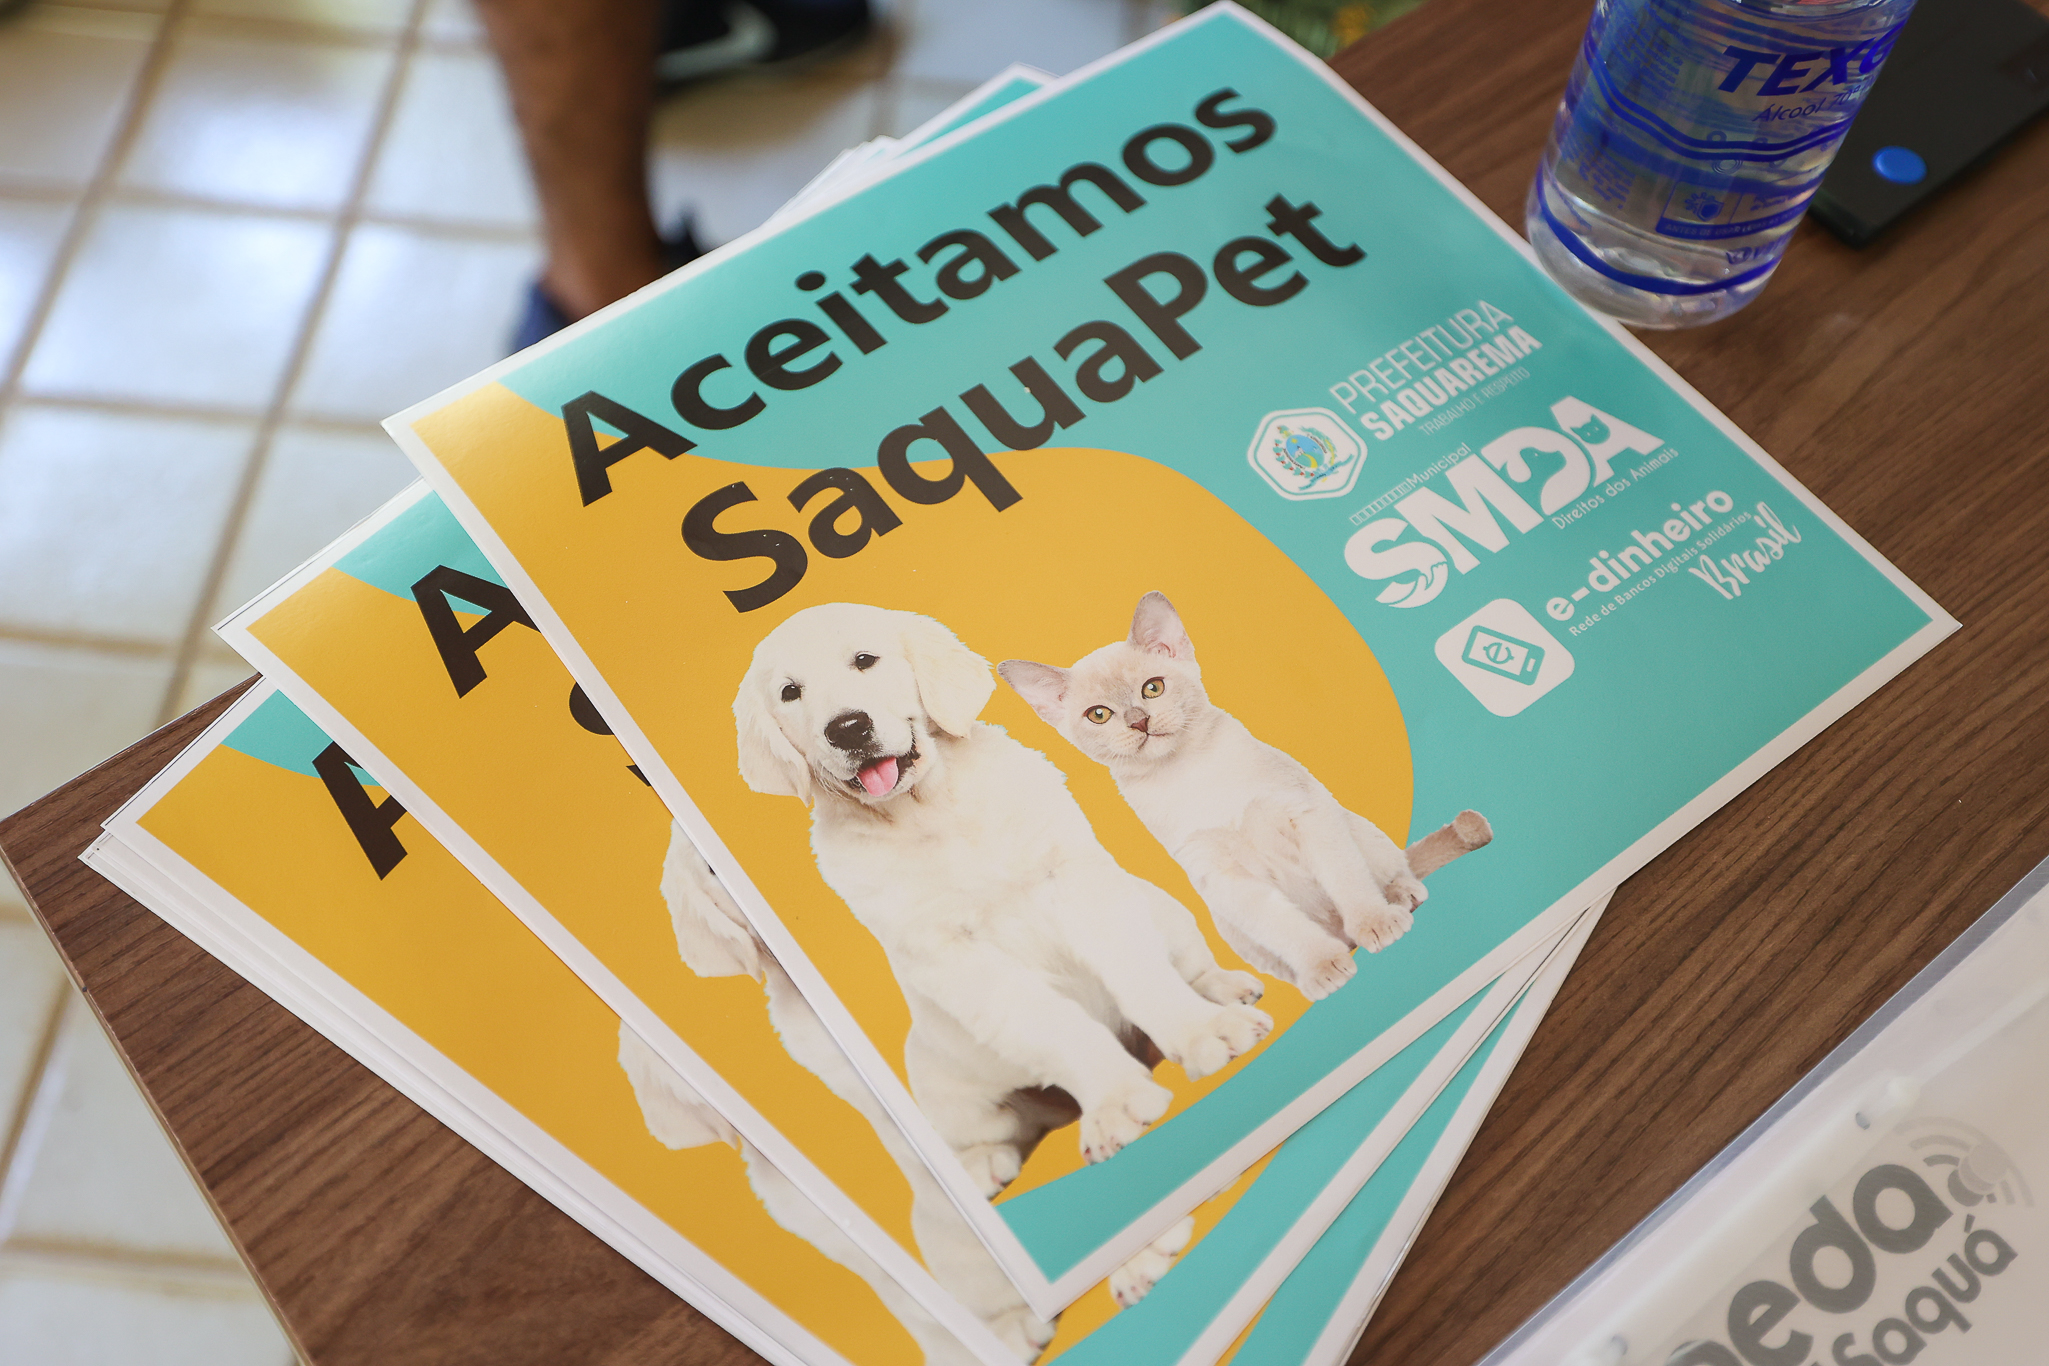 Saquarema: Prefeitura faz a entrega de 39 cartões do programa SaquaPet